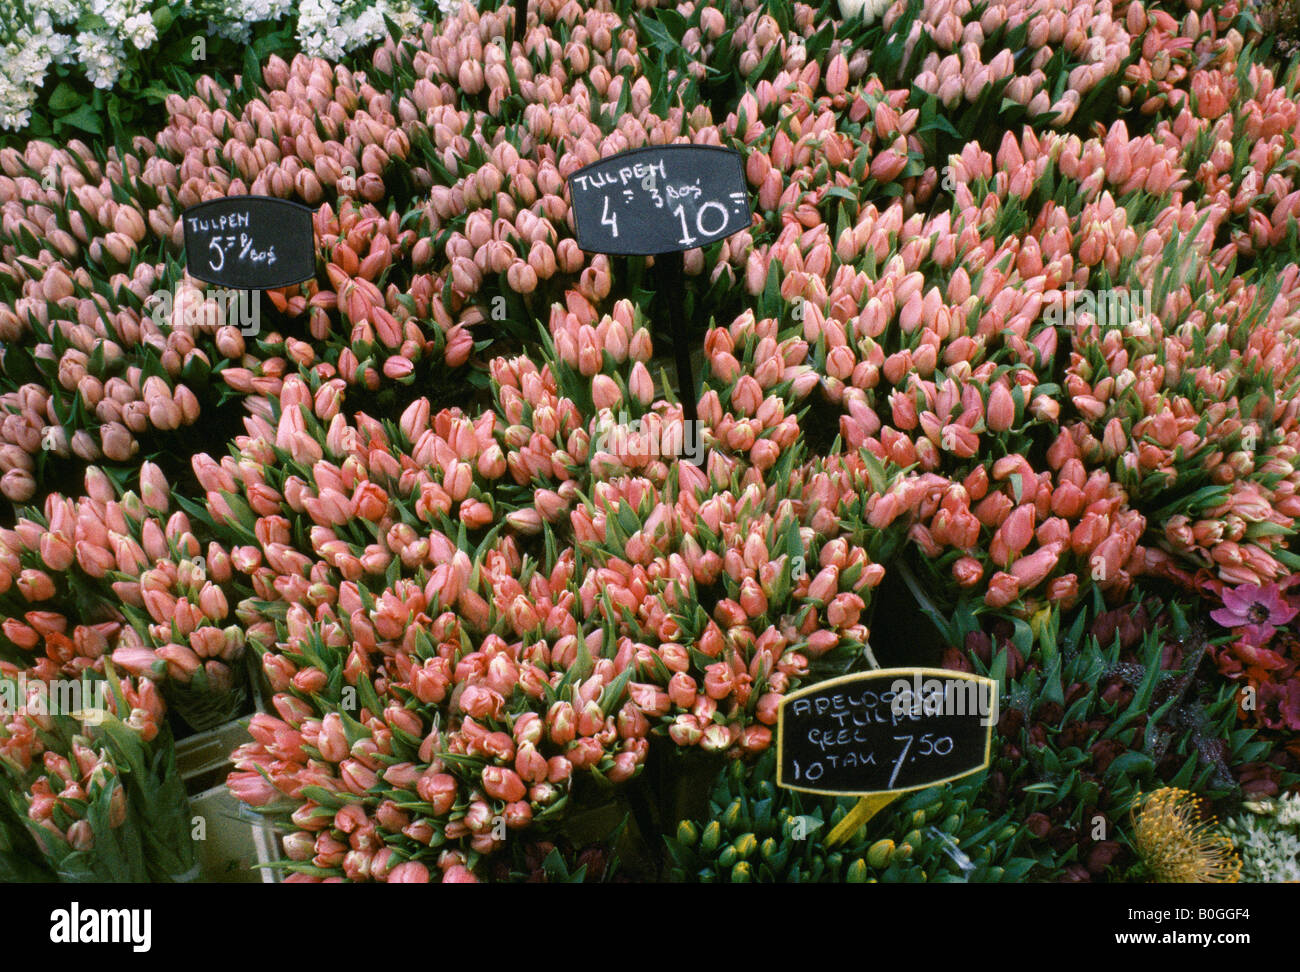 Tulipes en vente au marché aux Fleurs Singel, Amsterdam, Pays-Bas. Banque D'Images